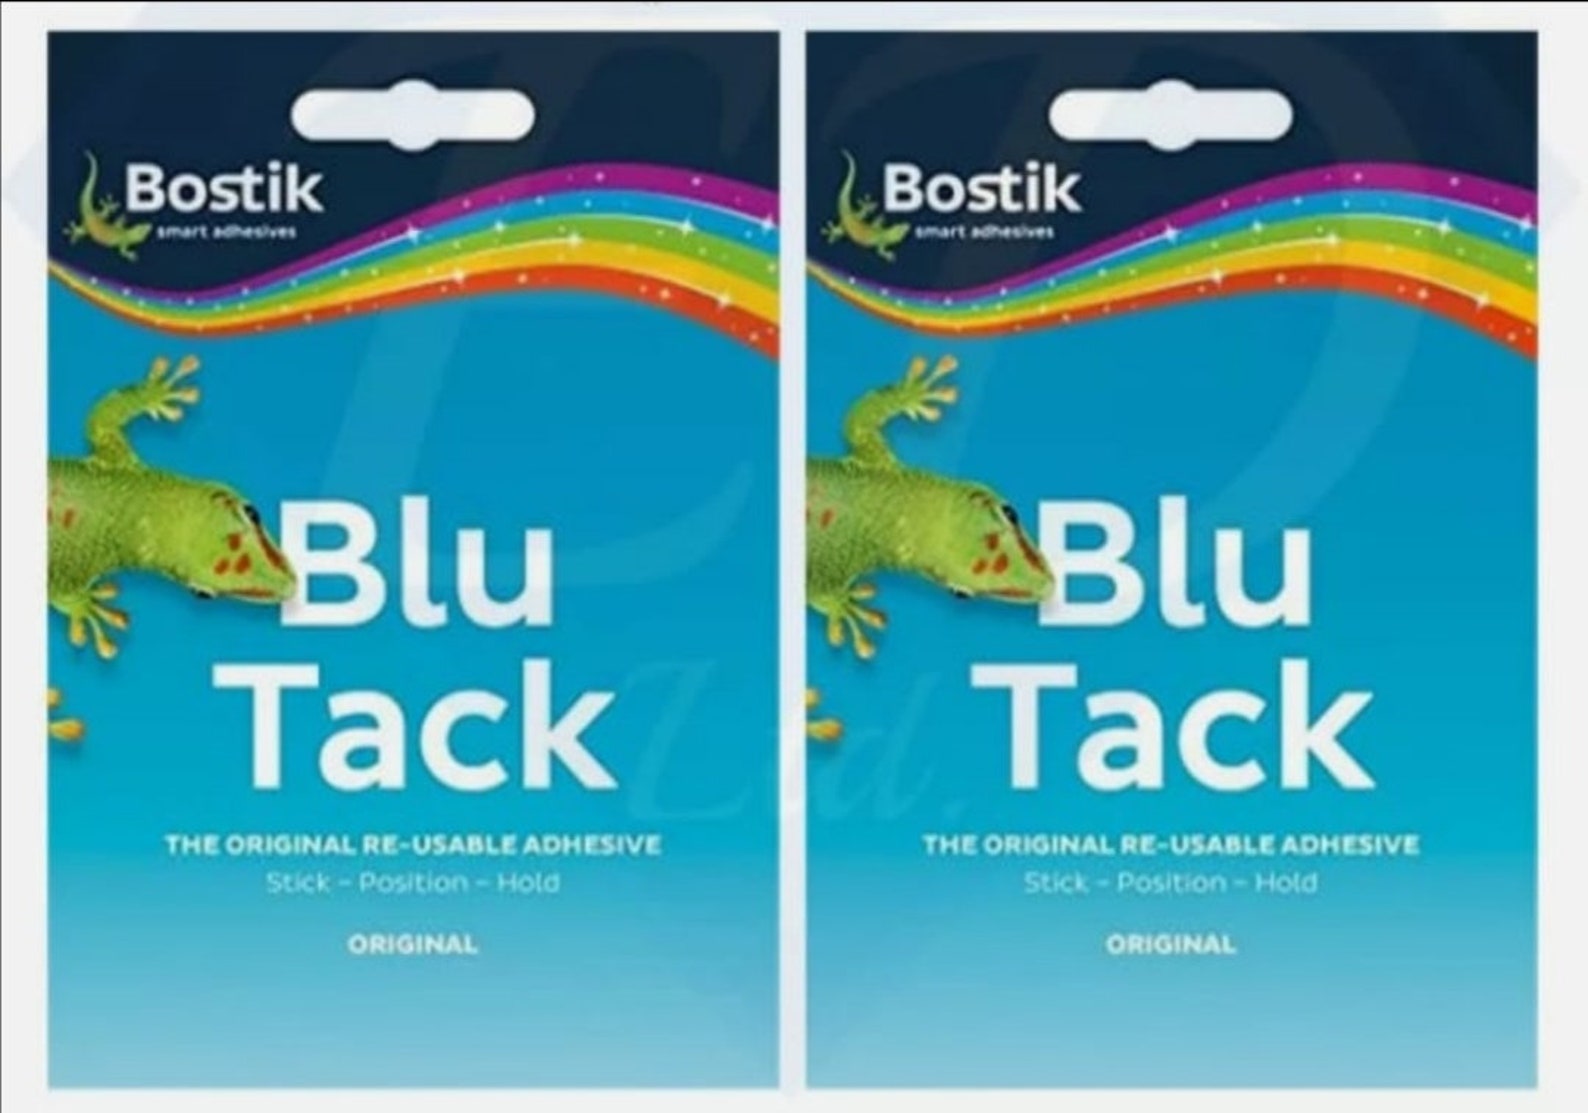 Blue sticky tack for hair - Ulta.com - wide 8